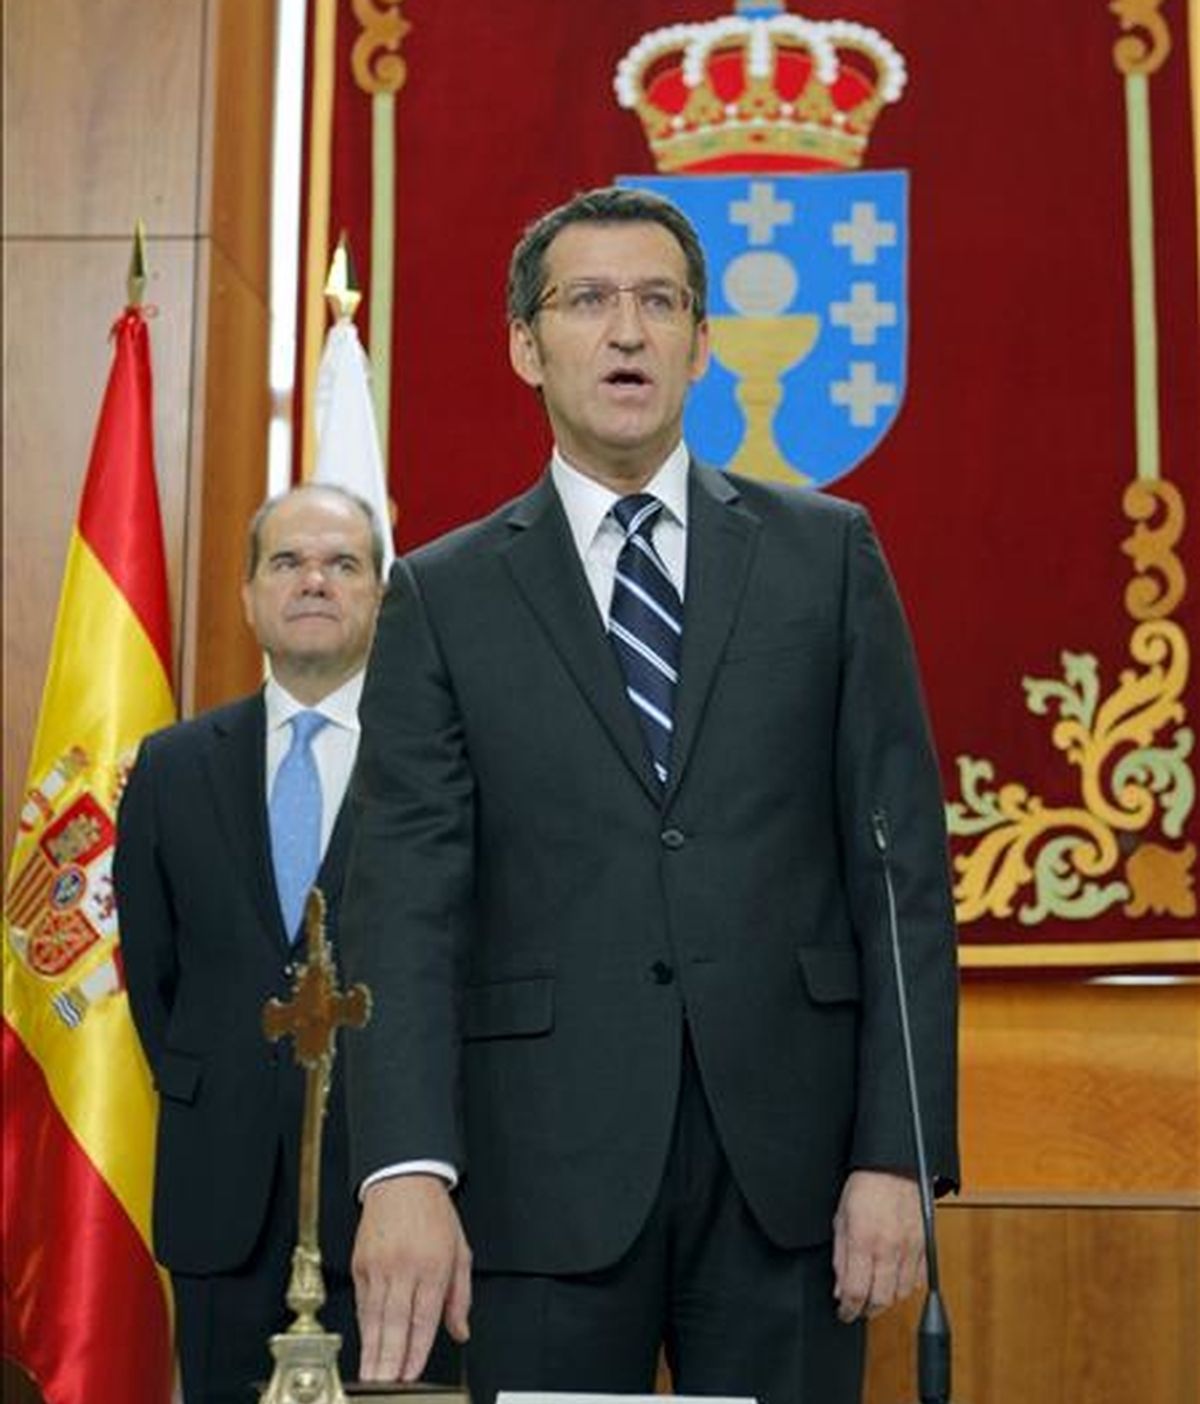 El presidente de la Xunta de Galicia, Alberto Núñez Feijóo, prometió su cargo, en presencia del vicepresidente tercero del Gobierno, Manuel Chaves, esta mañana en el Parlamento de Galicia. EFE